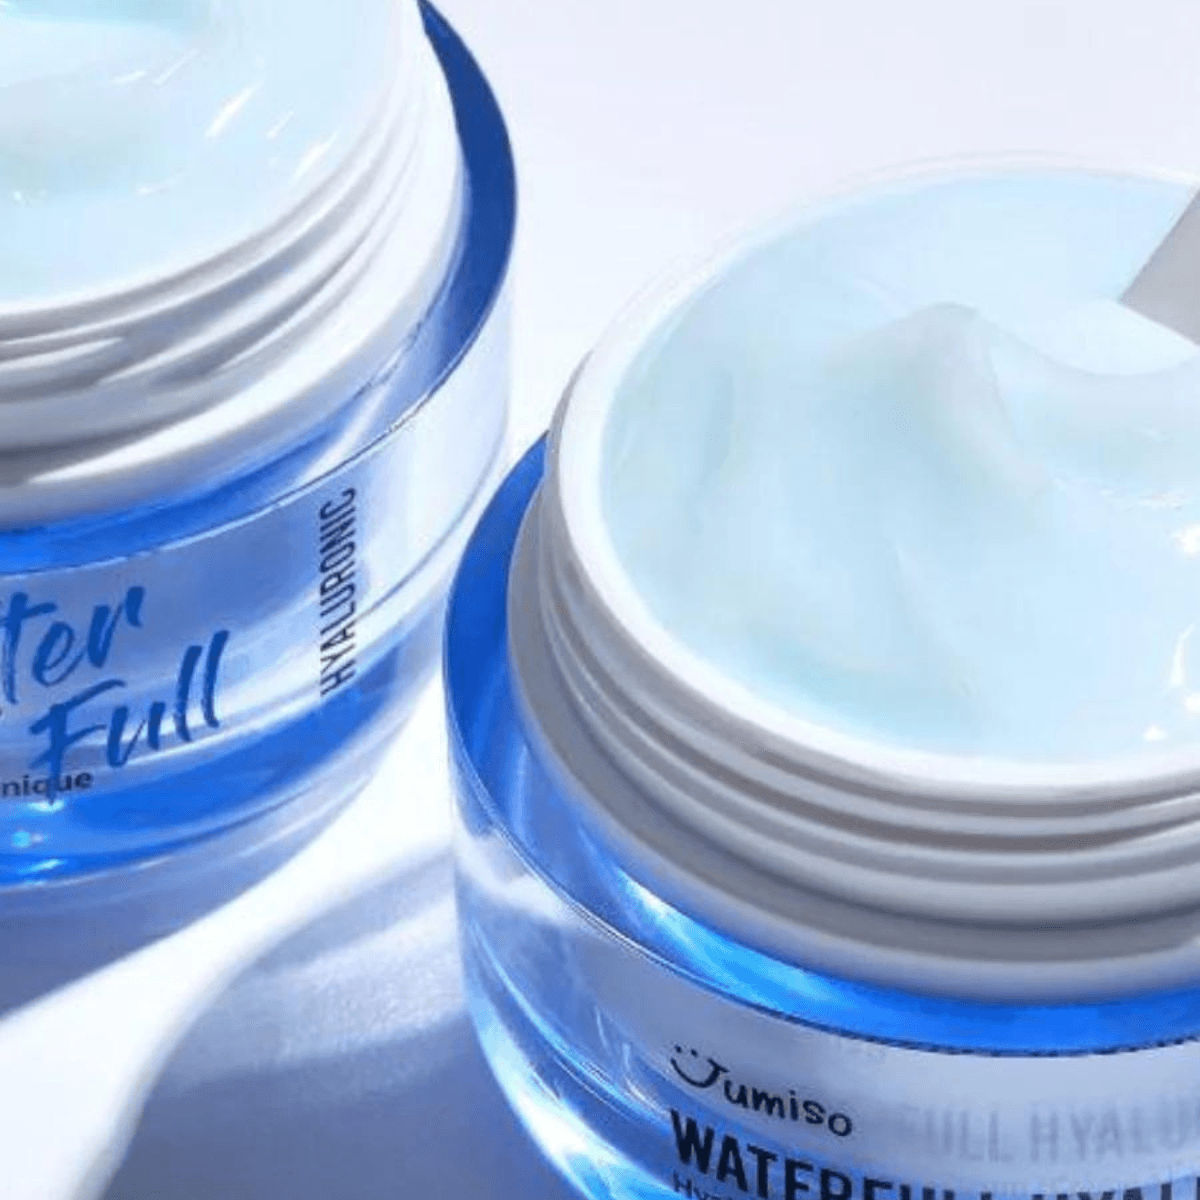 Waterfull Hyaluronic Cream - 50 g - K-Beauty Arabia